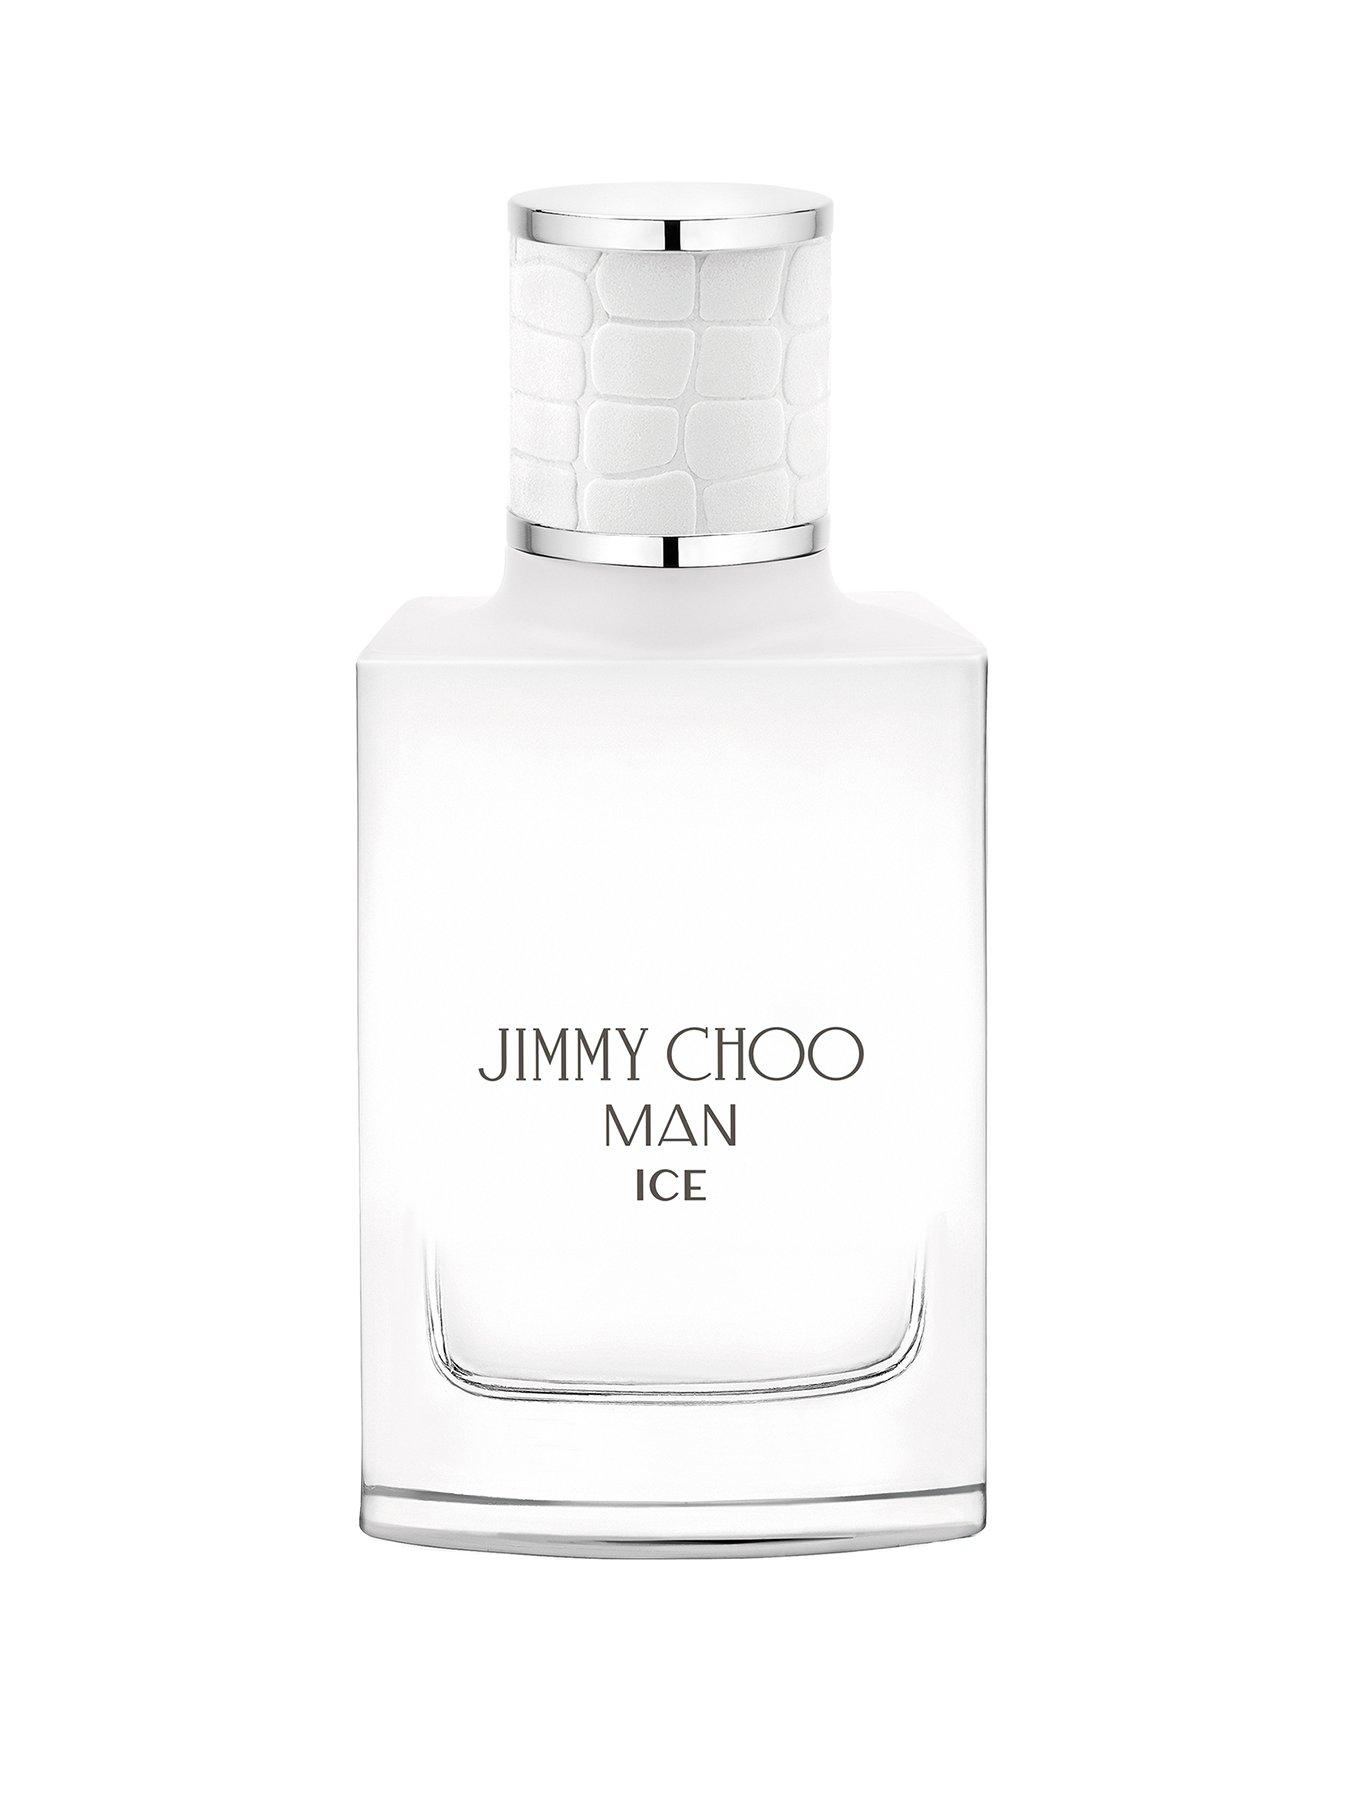 Jimmy Choo Man Ice Eau de Toilette 30ml | Very.co.uk